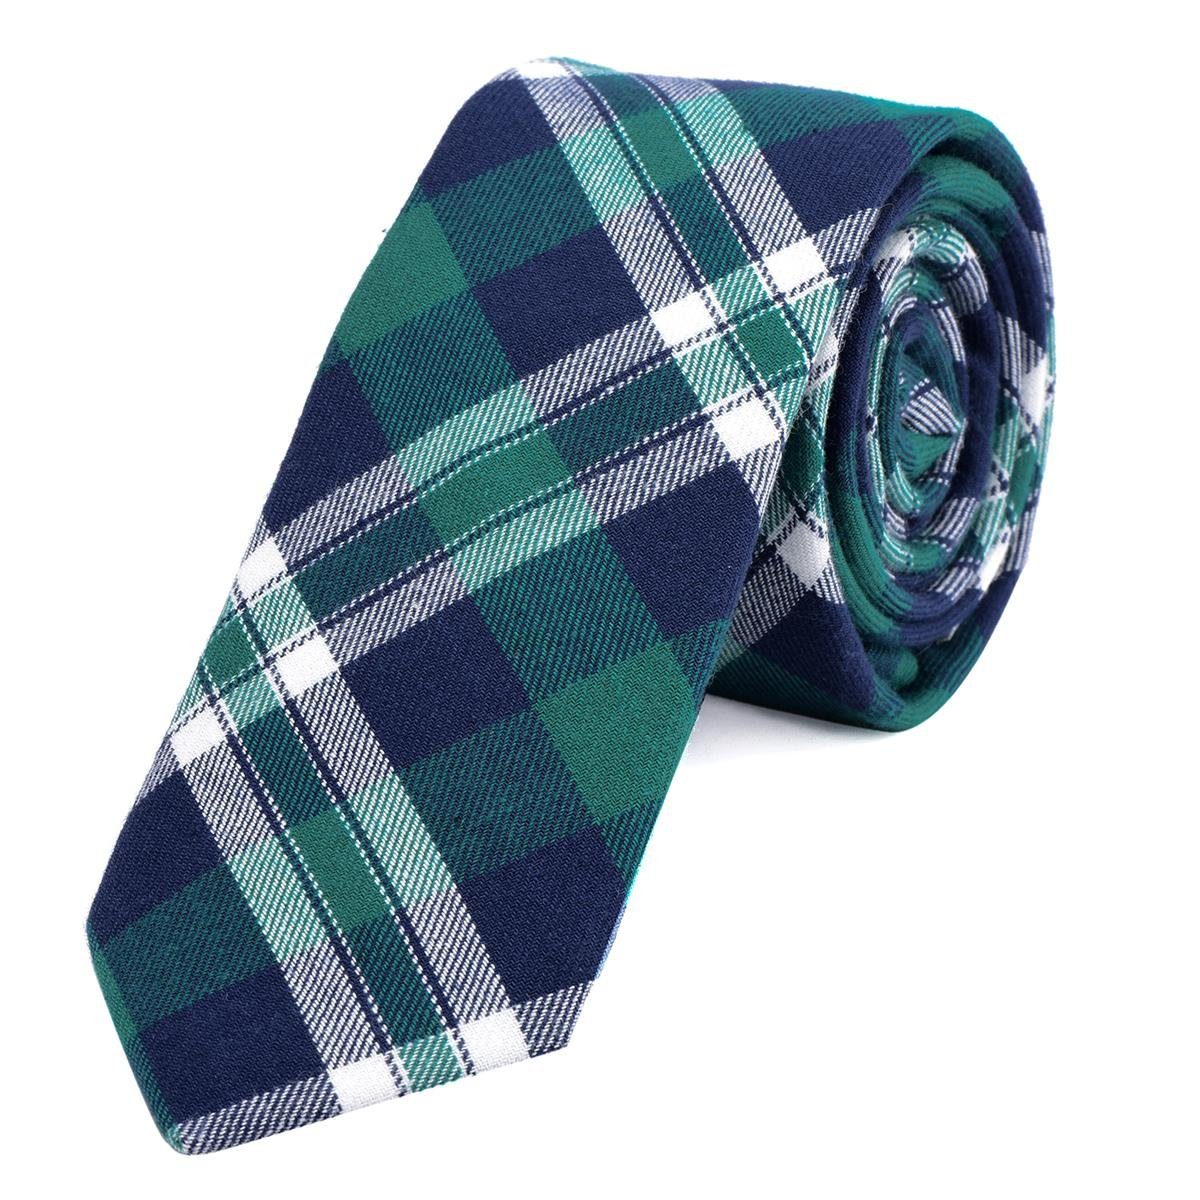 DonDon Krawatte Herren Krawatte 6 cm mit Karos oder Streifen (Packung, 1-St., 1x Krawatte) Baumwolle, kariert oder gestreift, für Büro oder festliche Veranstaltungen blau-grün kariert | Breite Krawatten